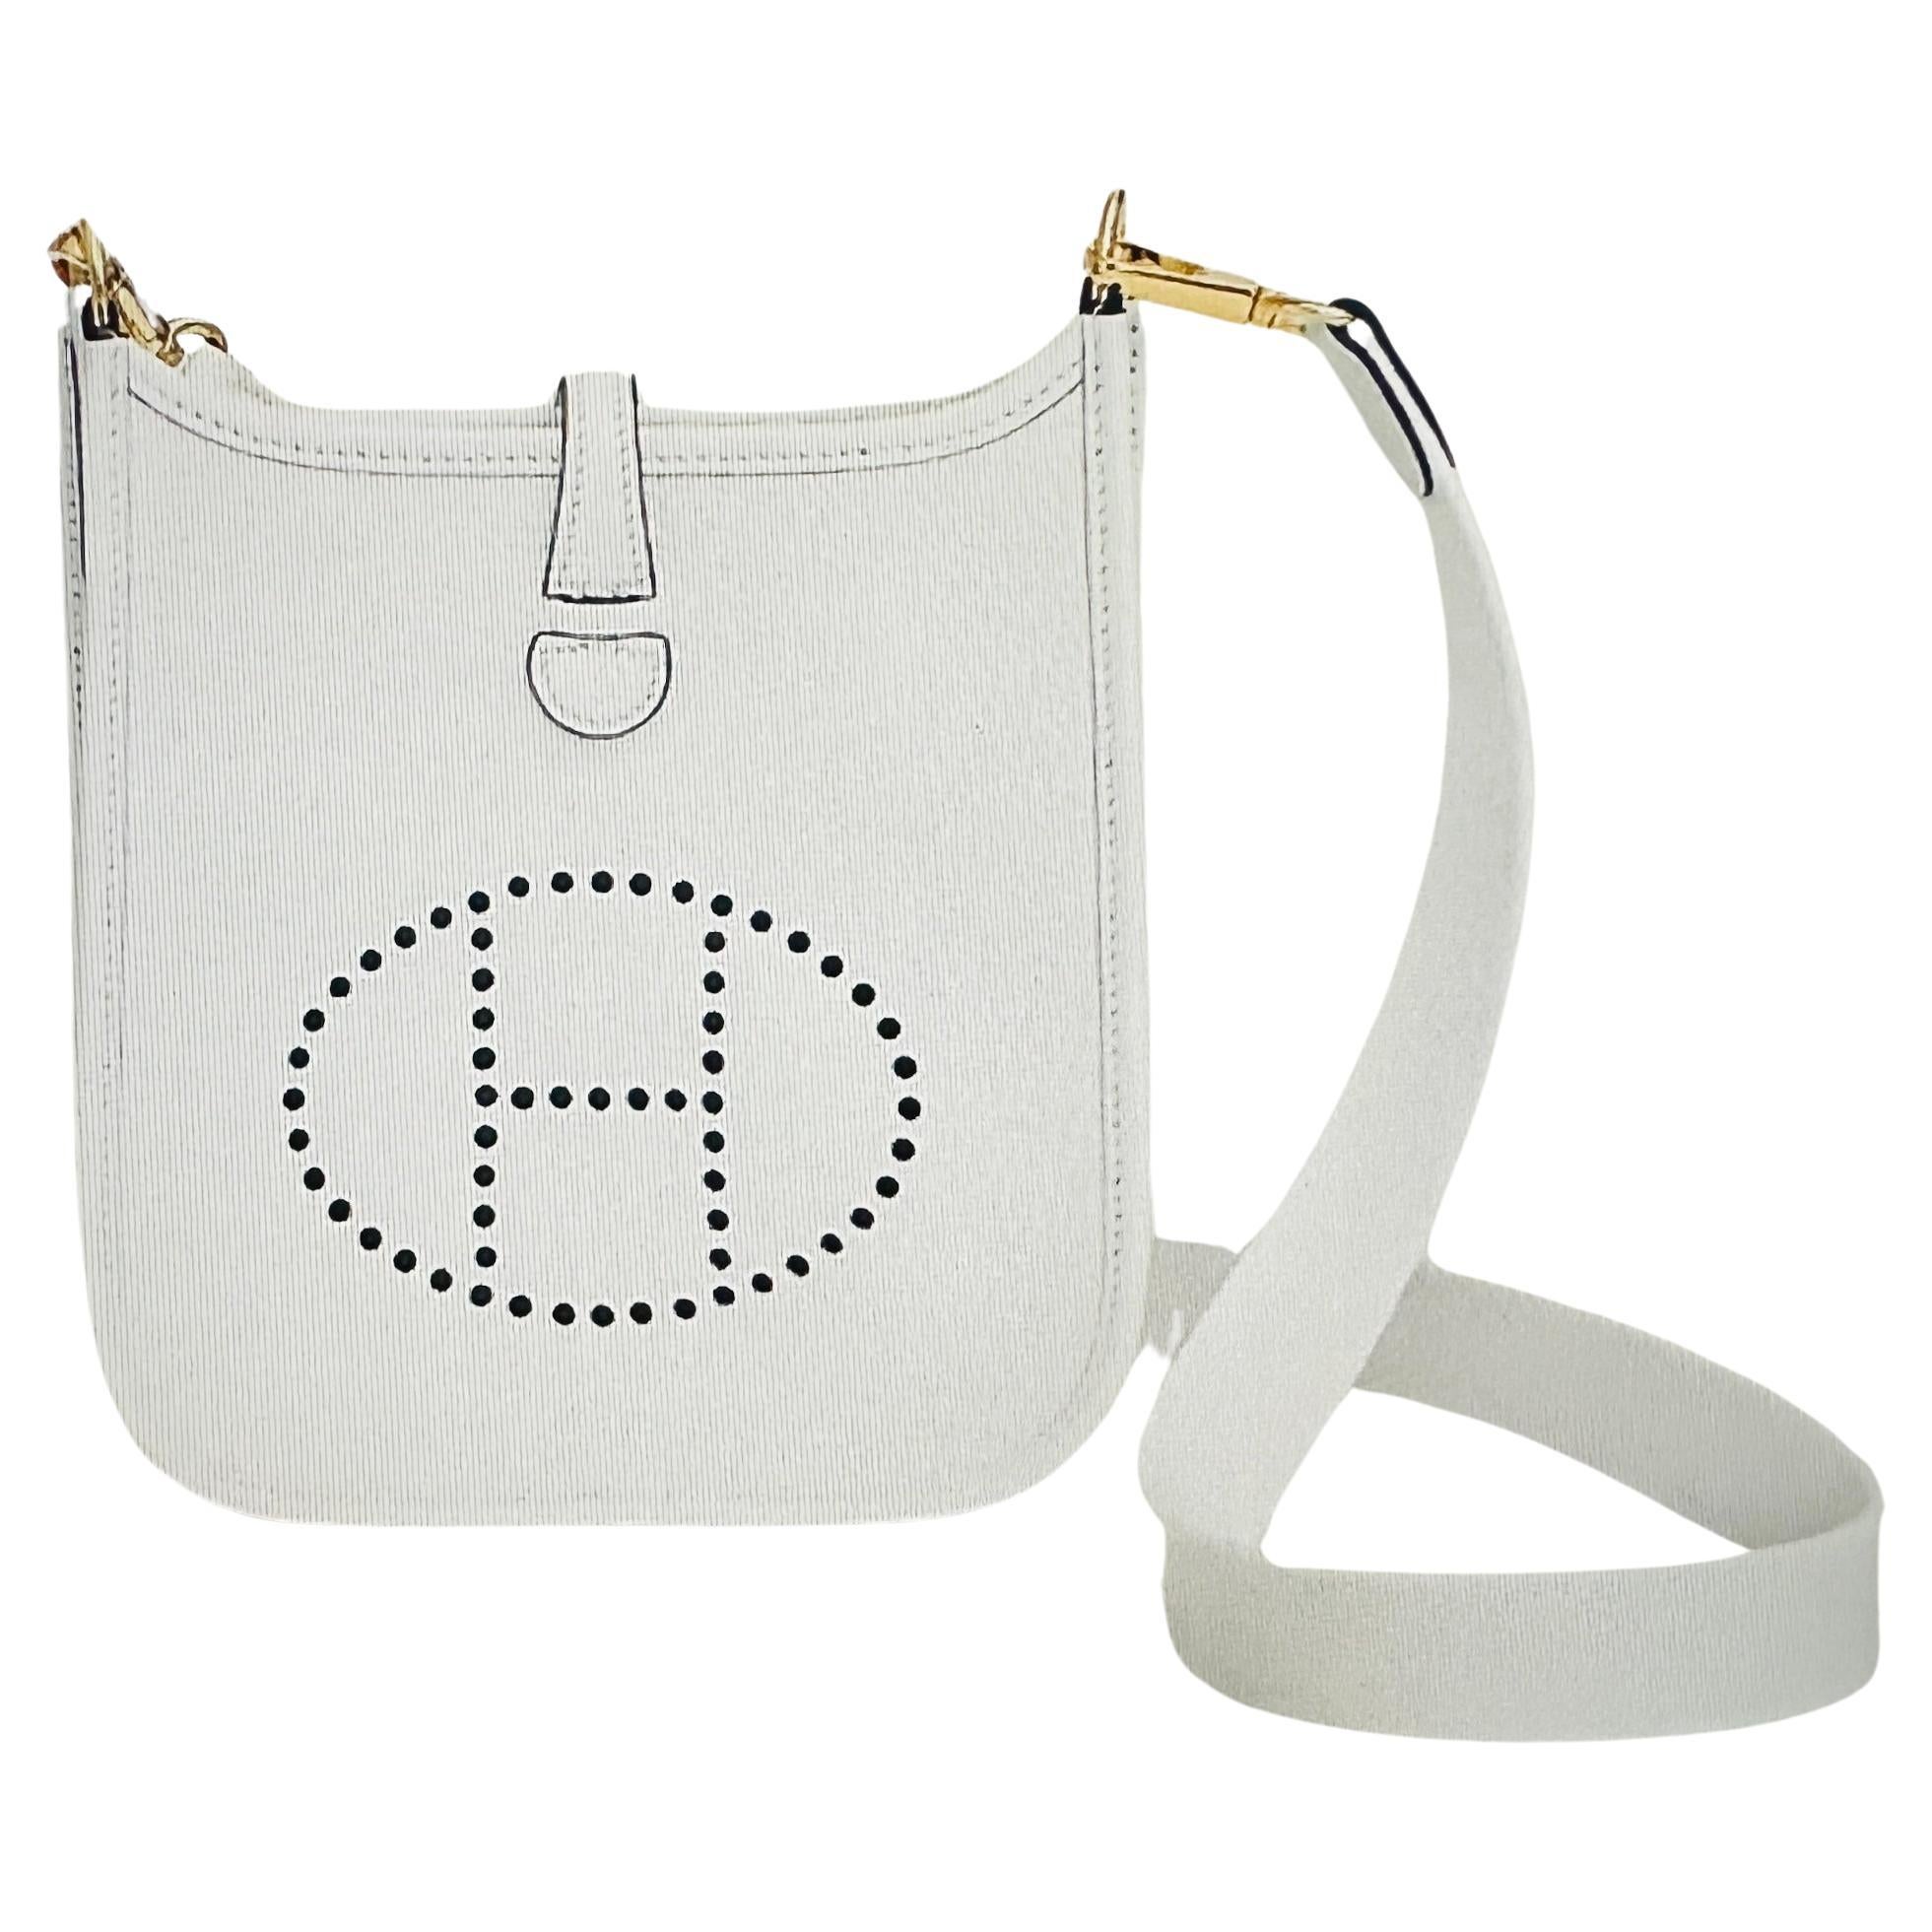 Hermès Evelyne New White TPM  Bag 16 Gold Hardware